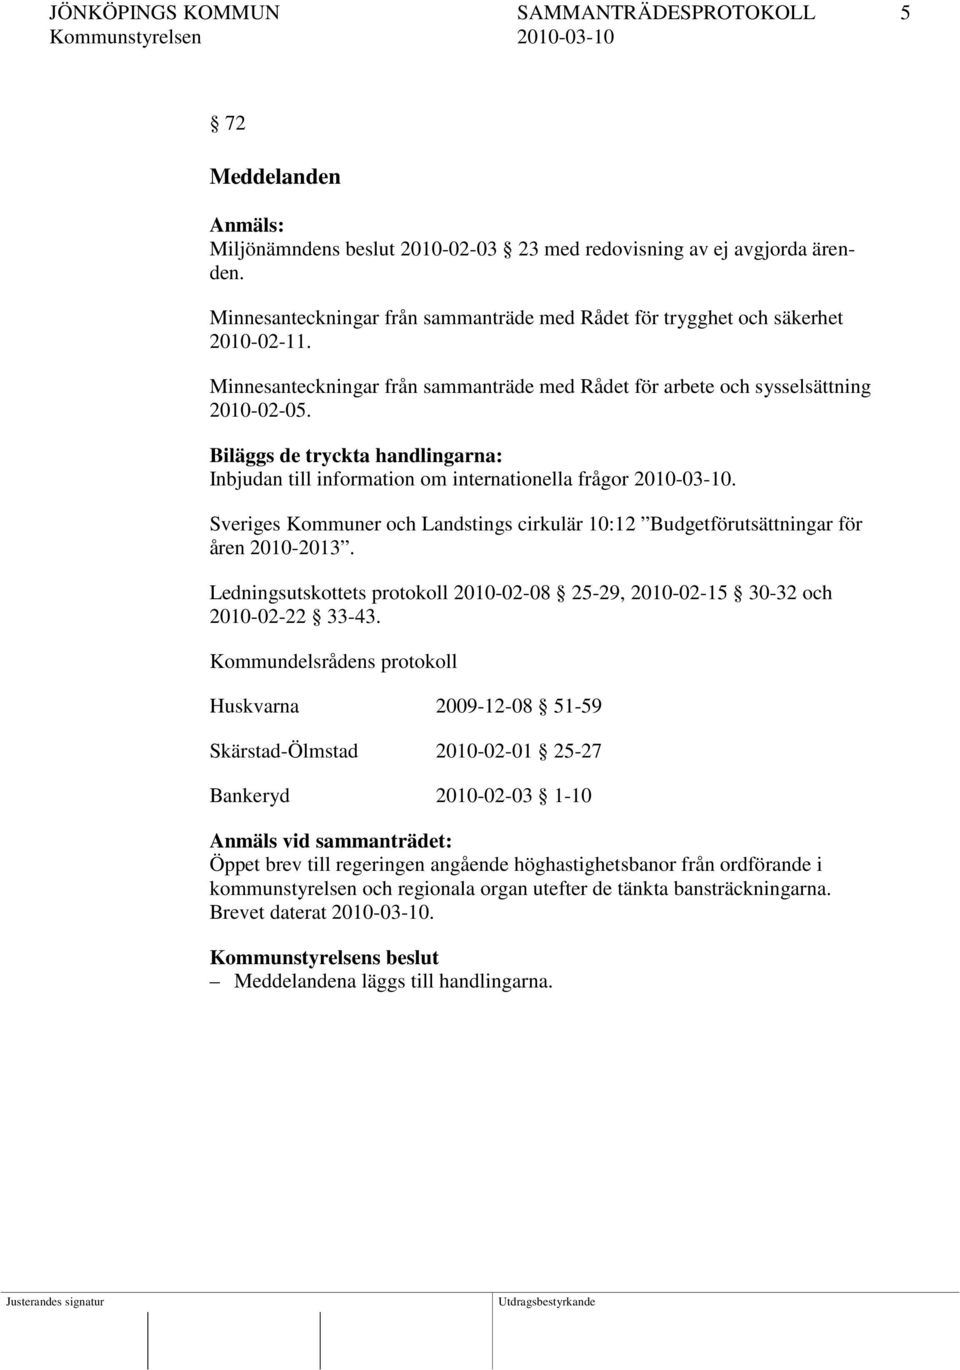 Biläggs de tryckta handlingarna: Inbjudan till information om internationella frågor 2010-03-10. Sveriges Kommuner och Landstings cirkulär 10:12 Budgetförutsättningar för åren 2010-2013.